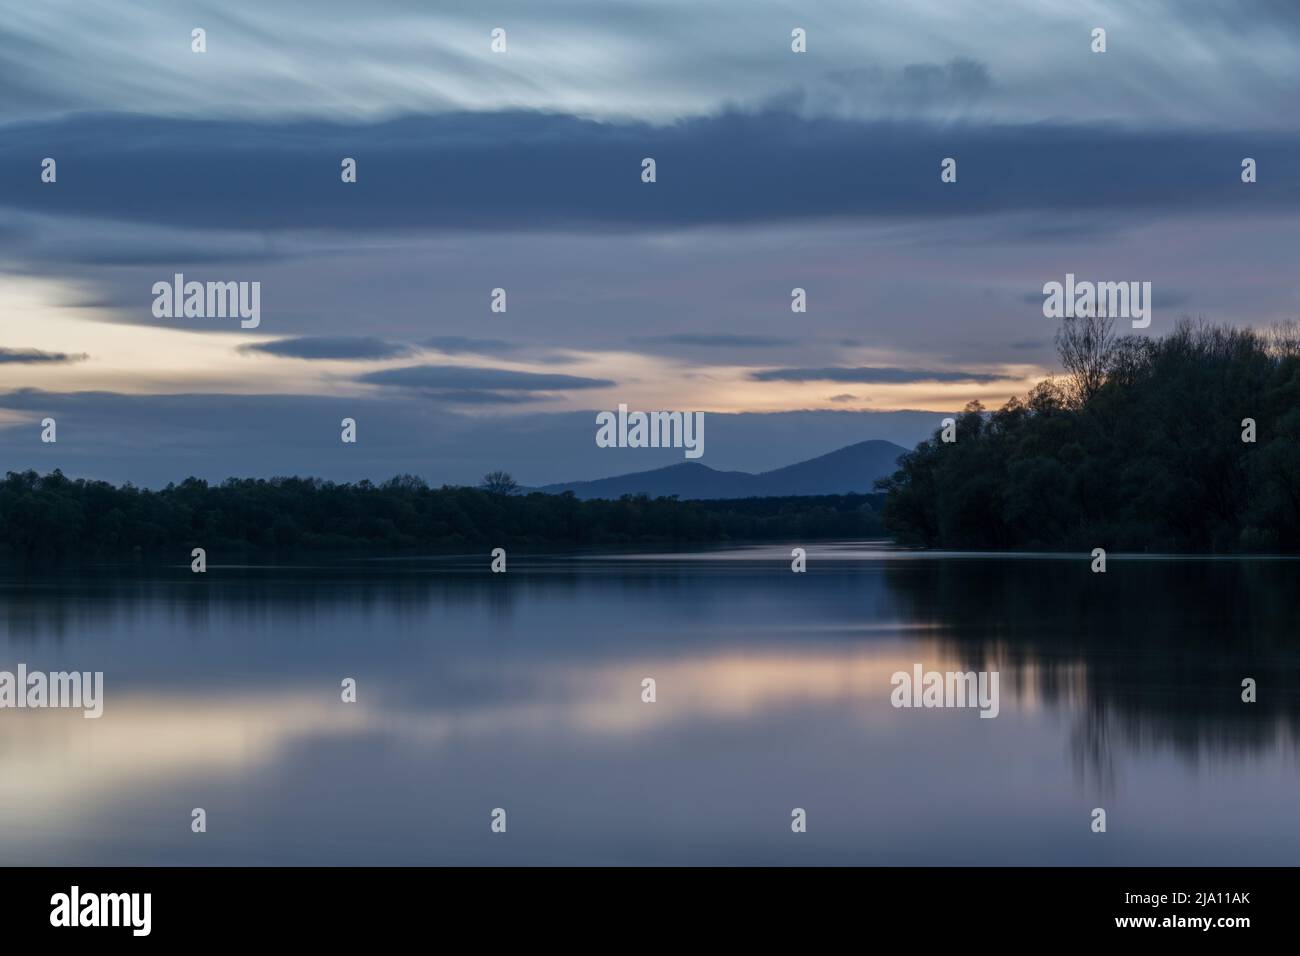 Paesaggio di fiume e silhouette di montagna al crepuscolo, fiume Sava con riva boscosa e scena montana Motajica con nuvole nel cielo durante l'ora blu Foto Stock